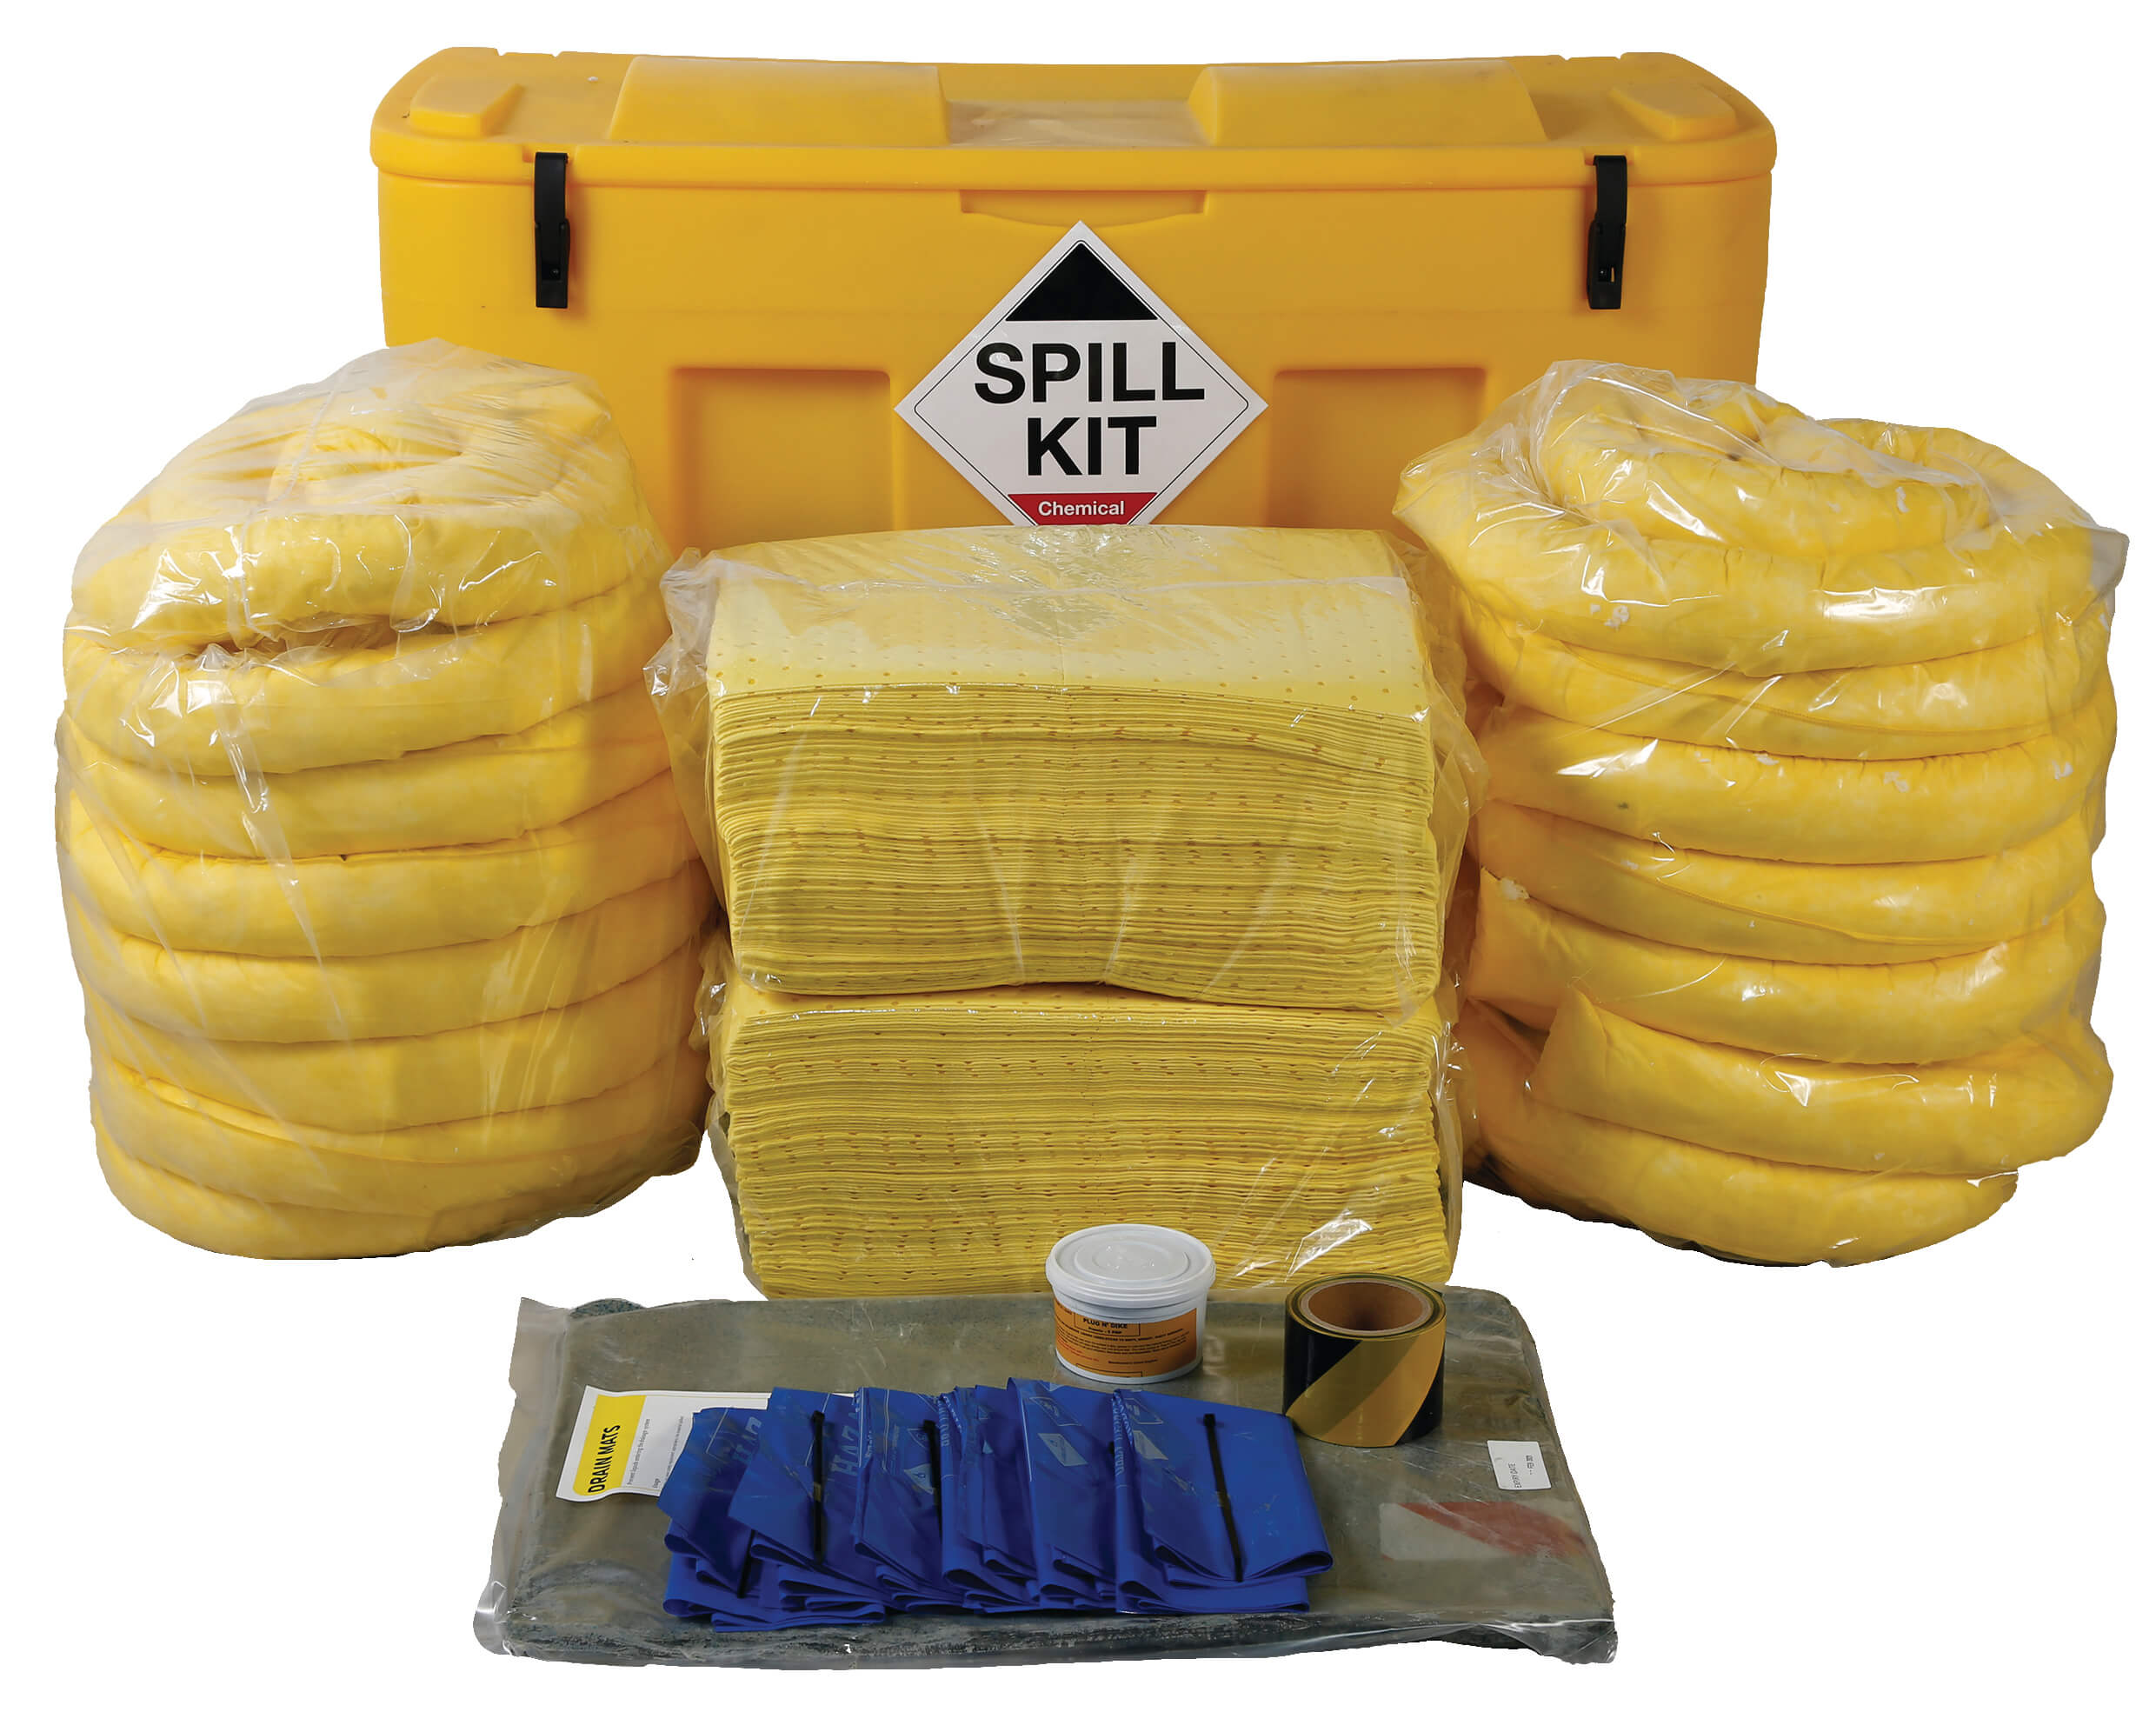 Chemical Spill Kit in Locker